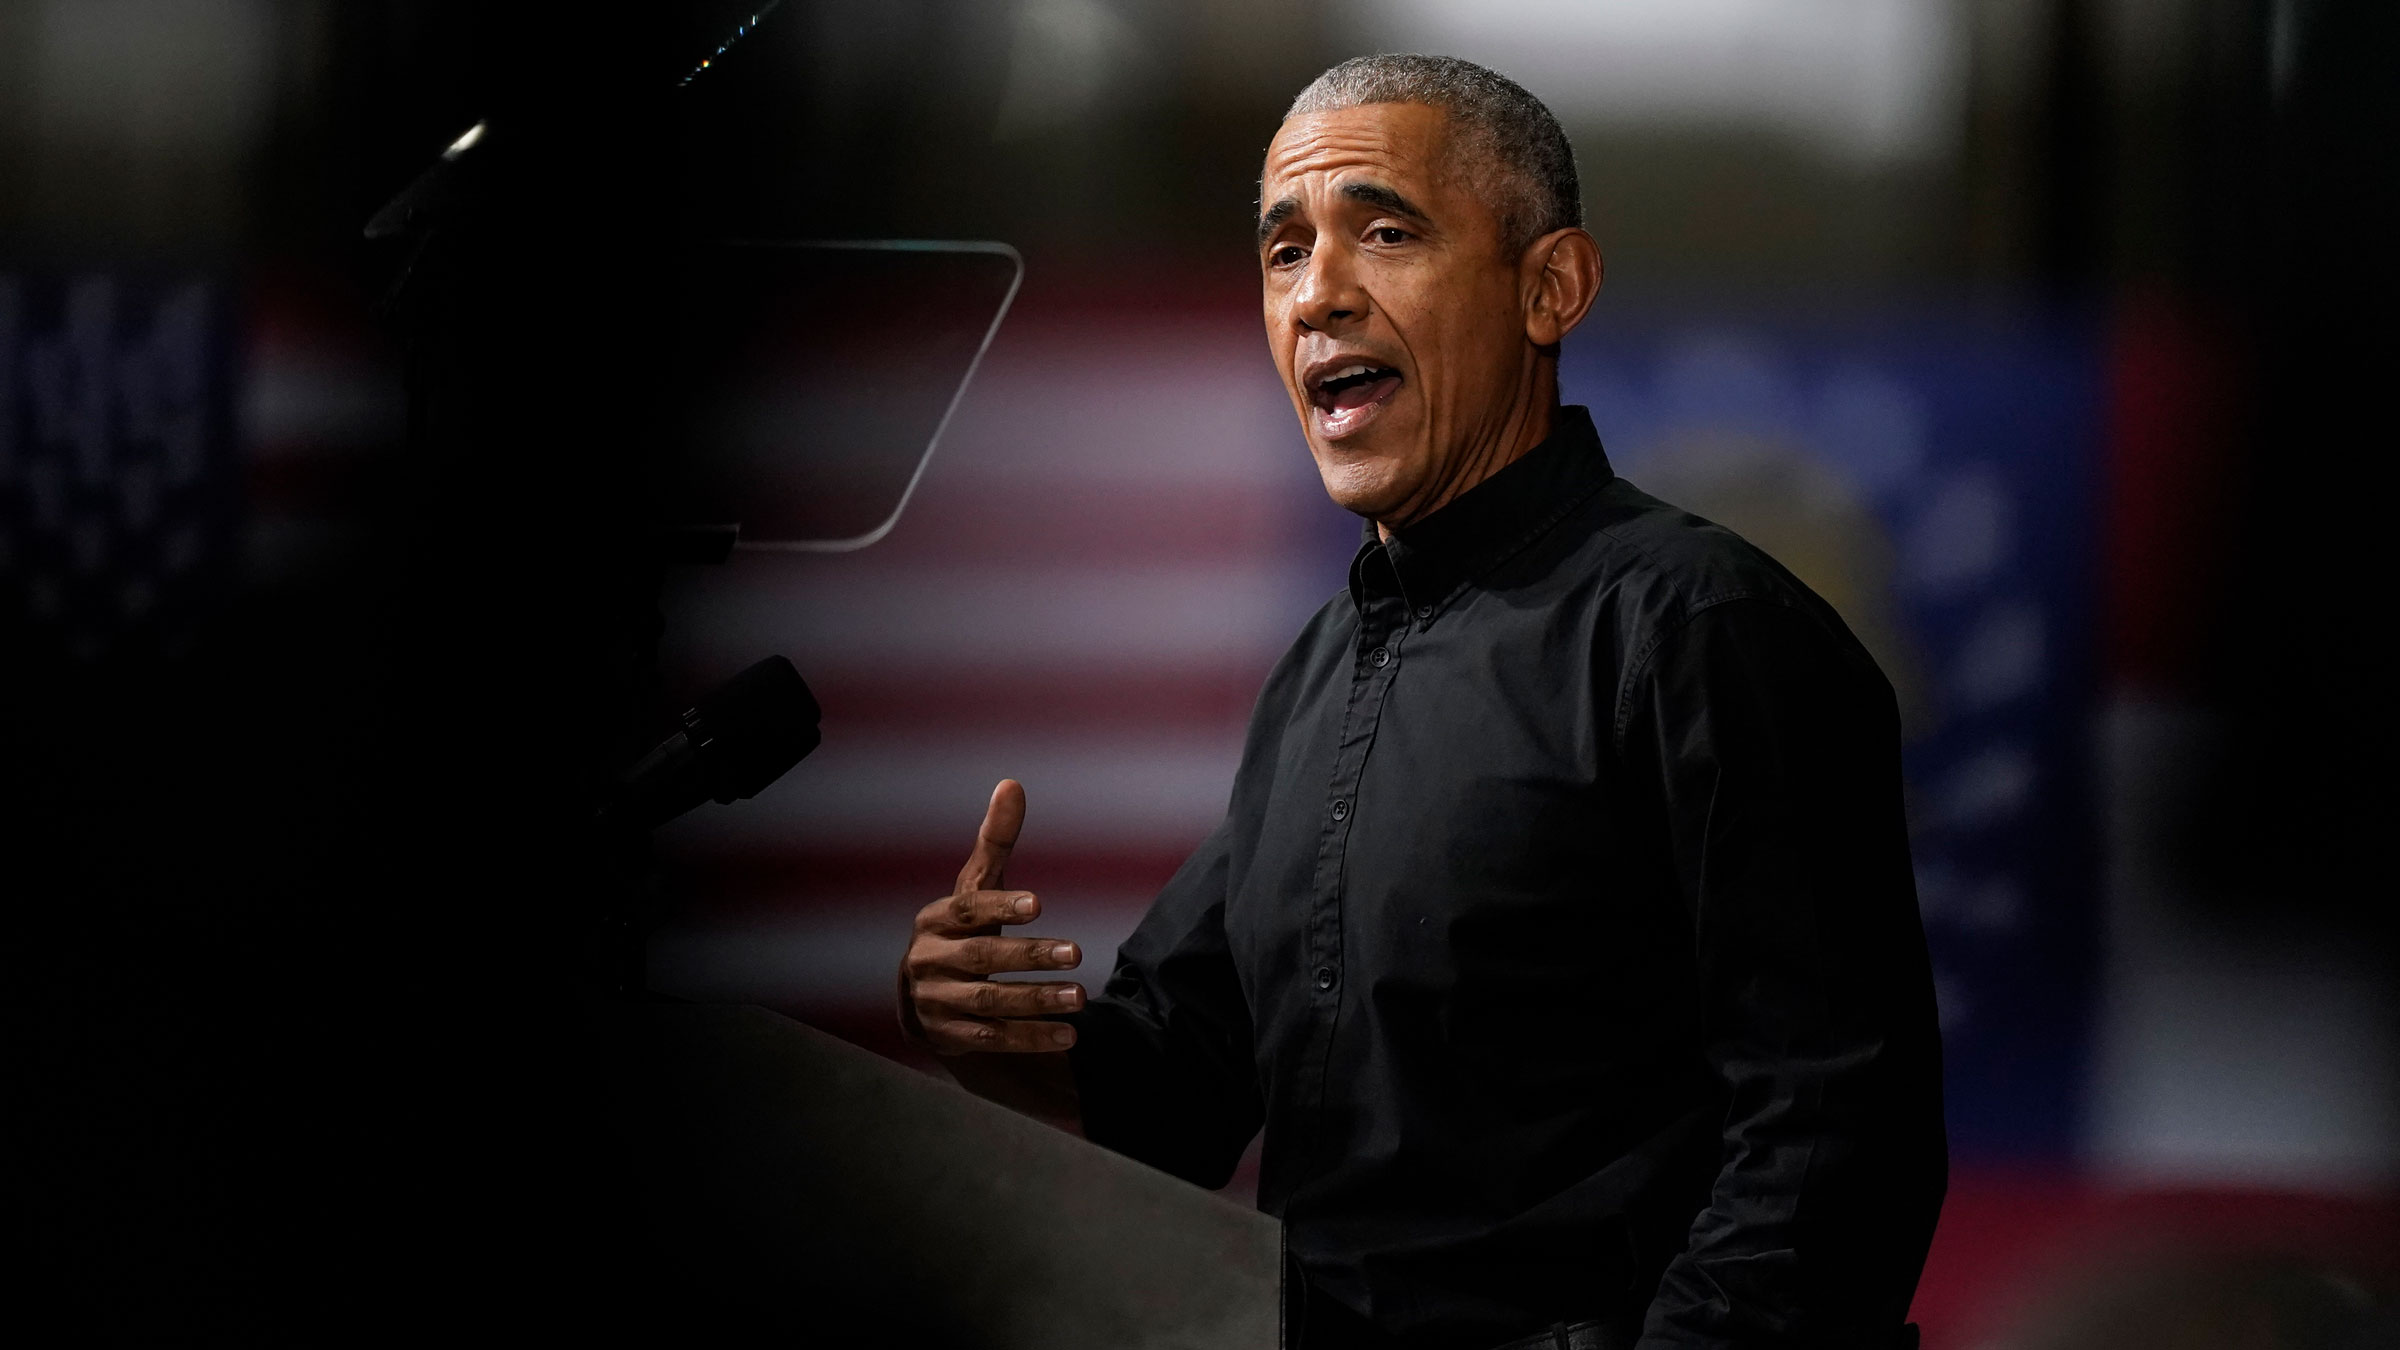 Former President Barack Obama speaks at a rally in Atlanta on Thursday.